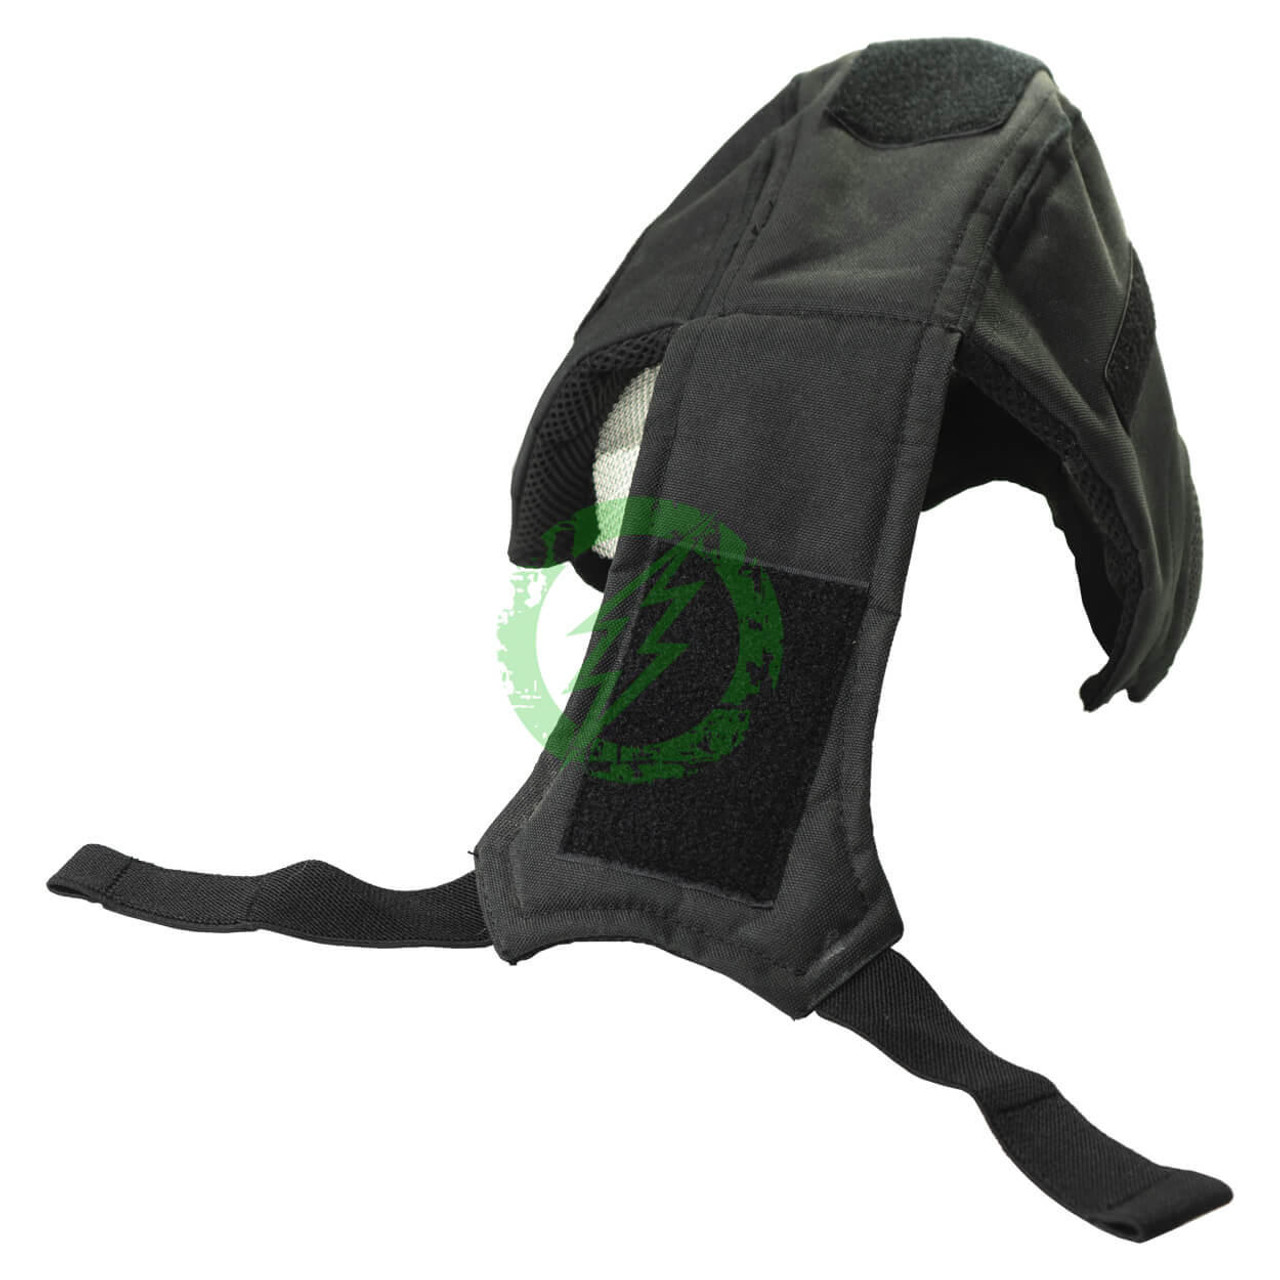  Matrix Striker Helmet Full Face Carbon Steel Mesh Mask 